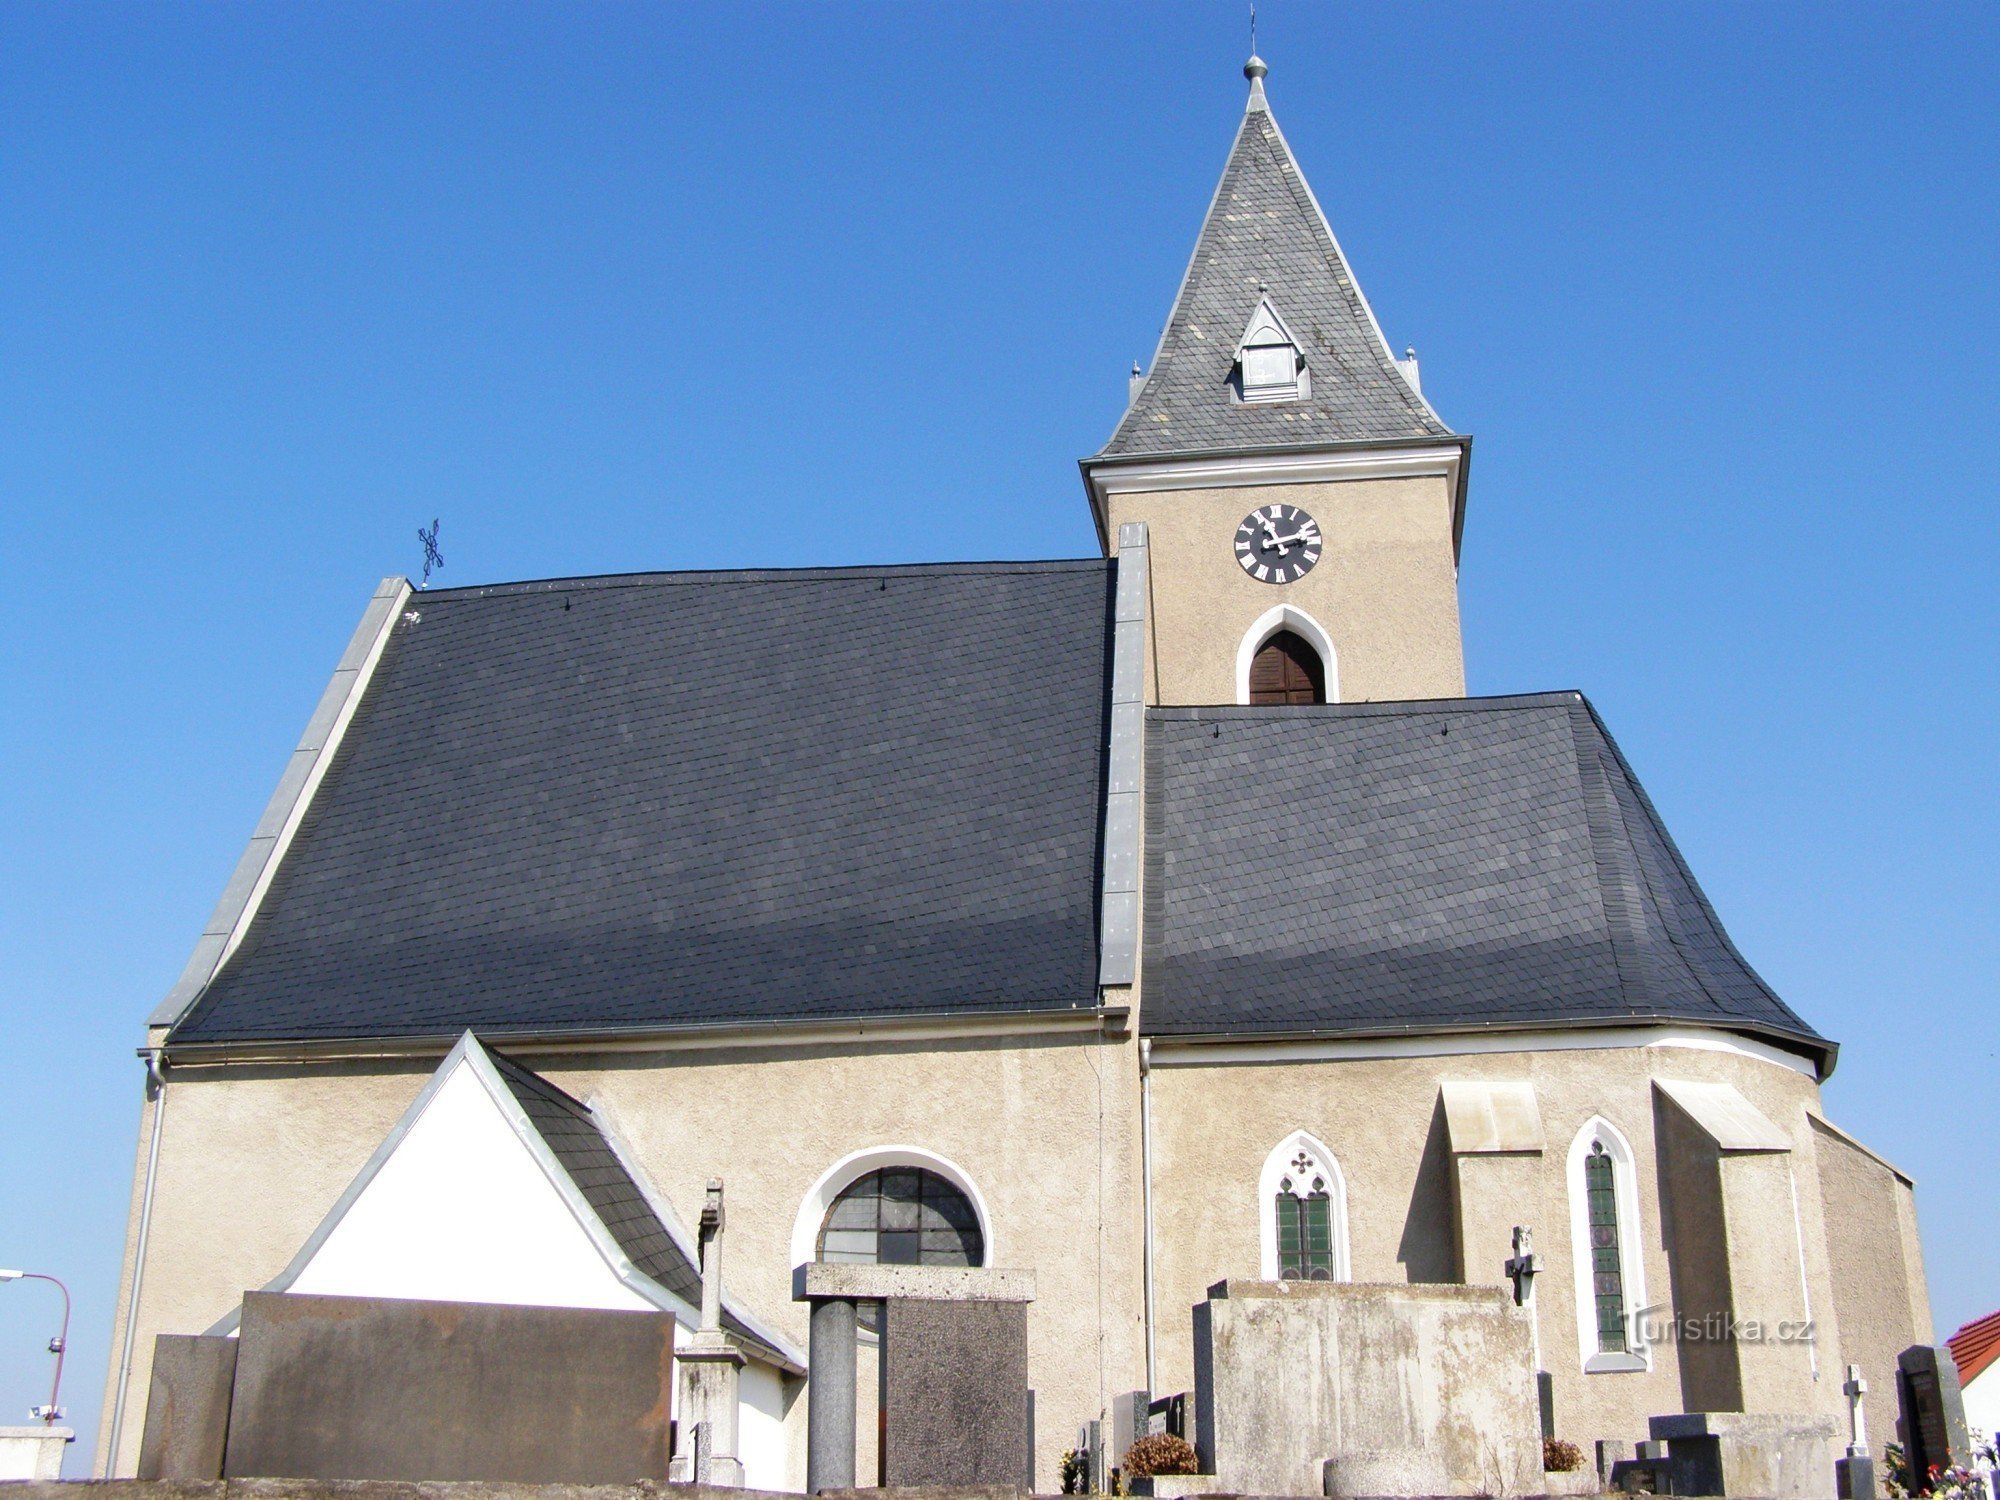 Dríteč - 圣彼得教堂彼得和保罗